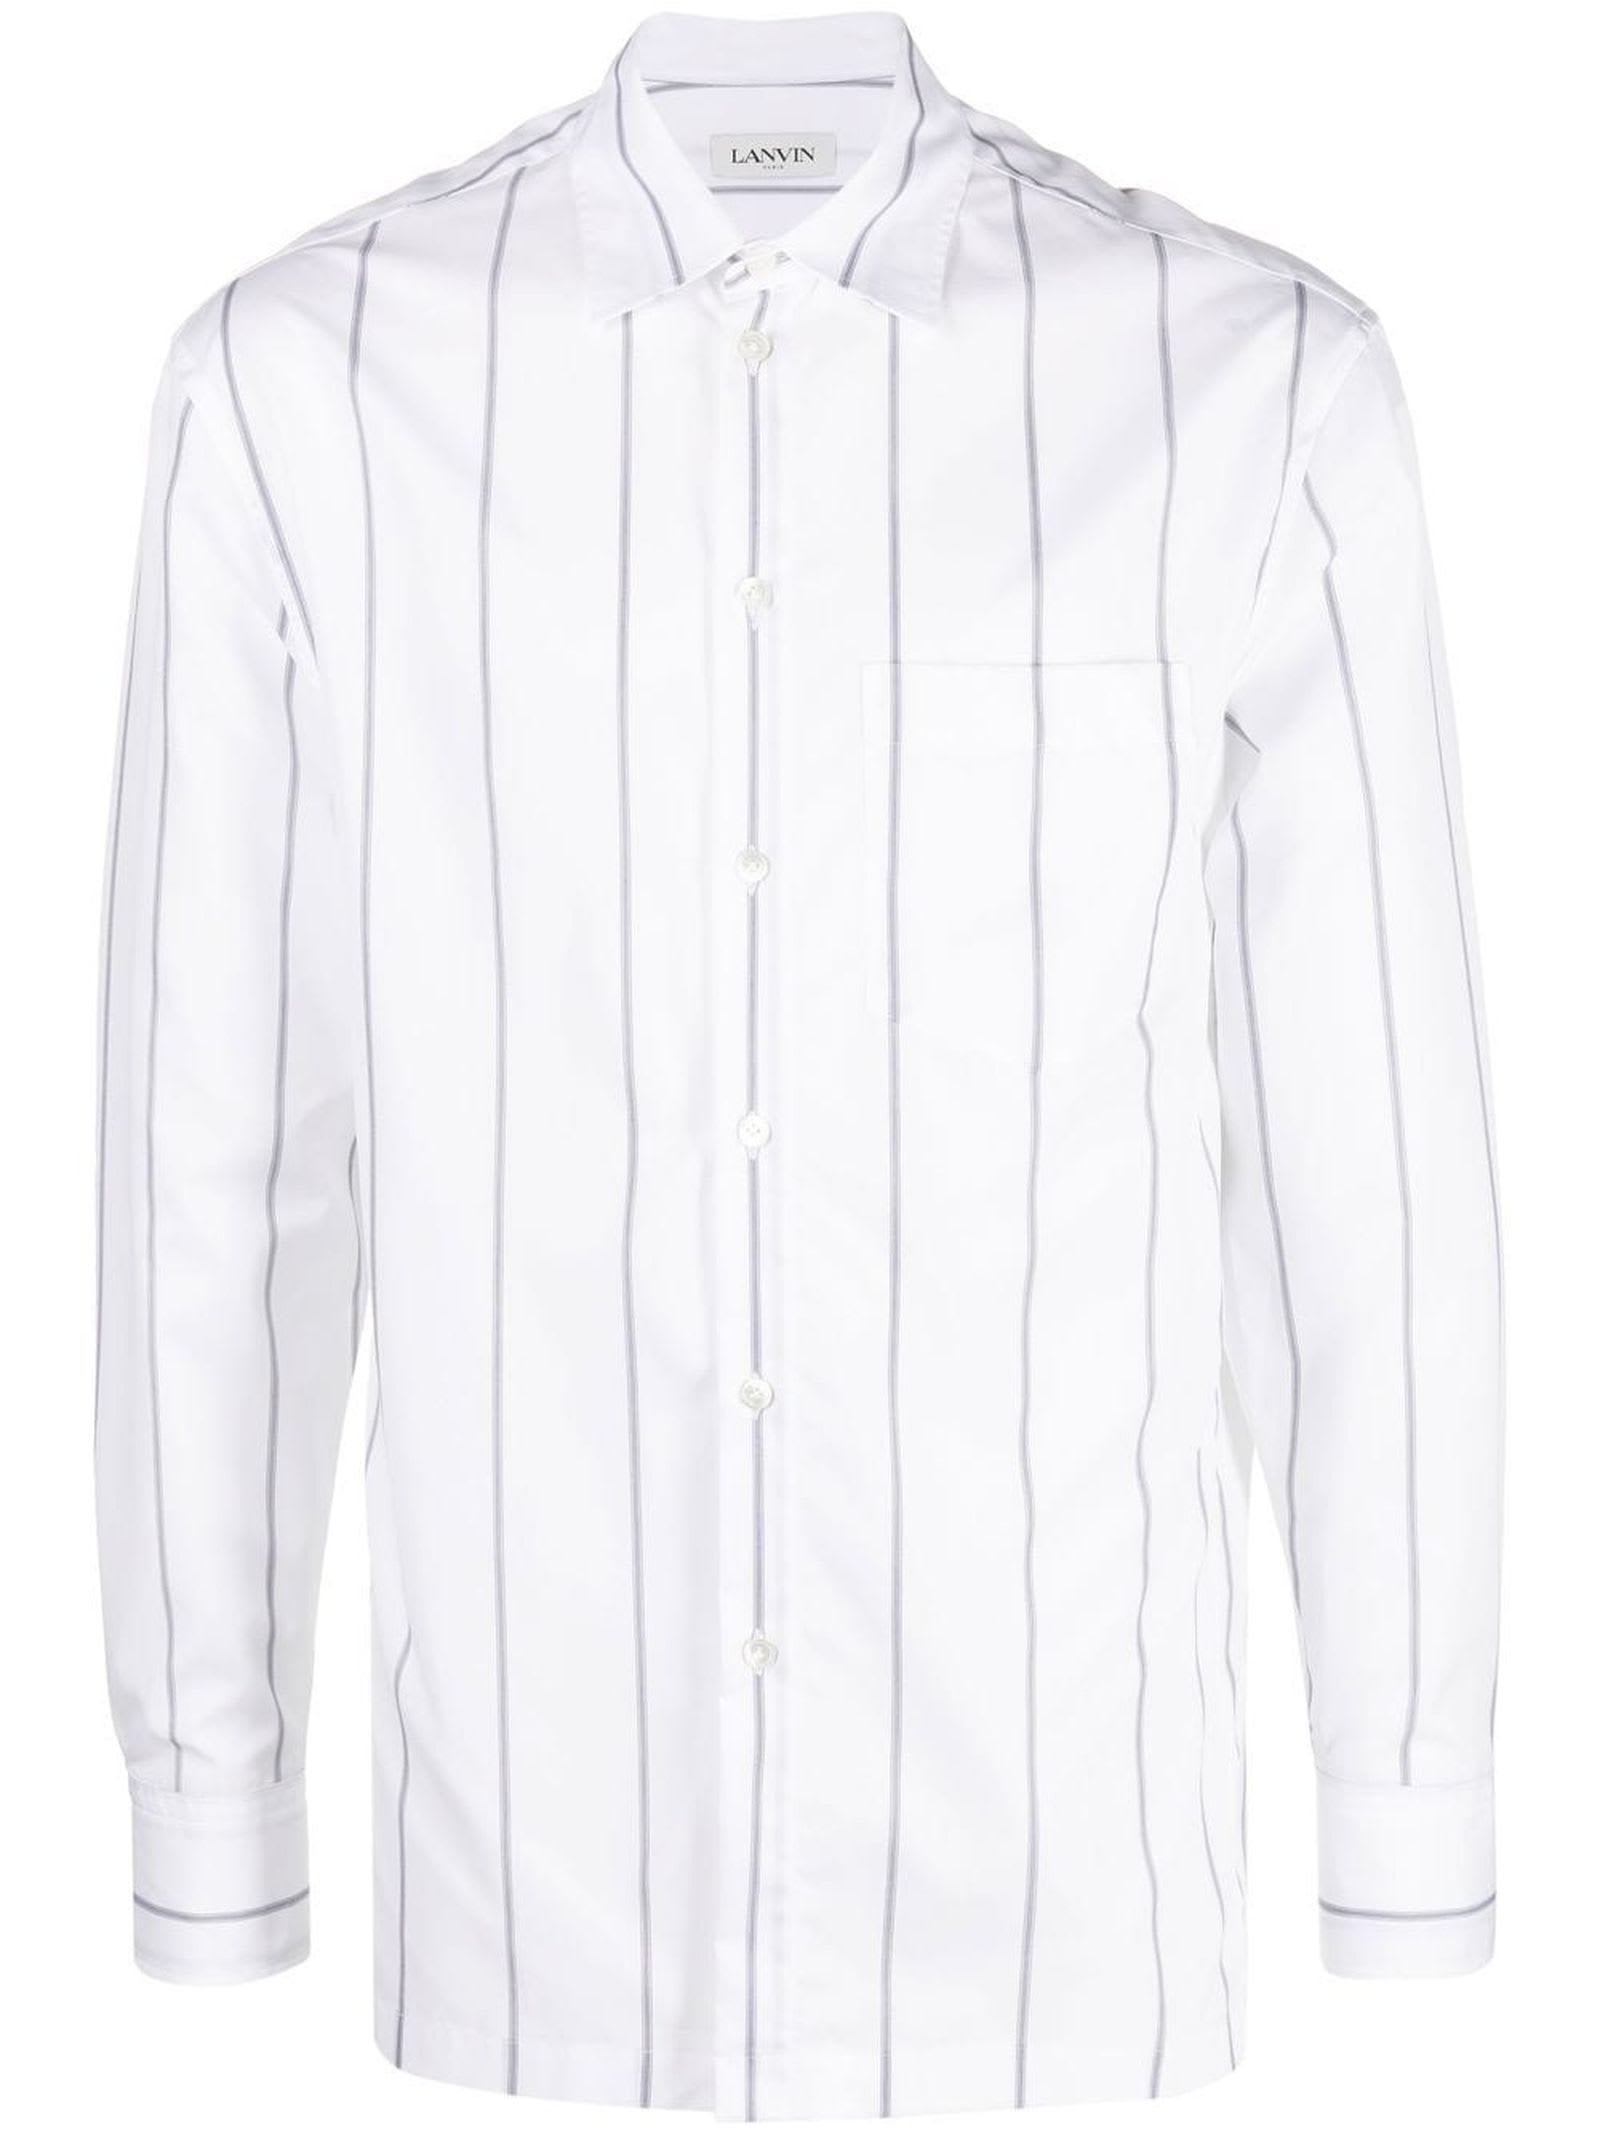 Lanvin White Cotton Blend Shirt